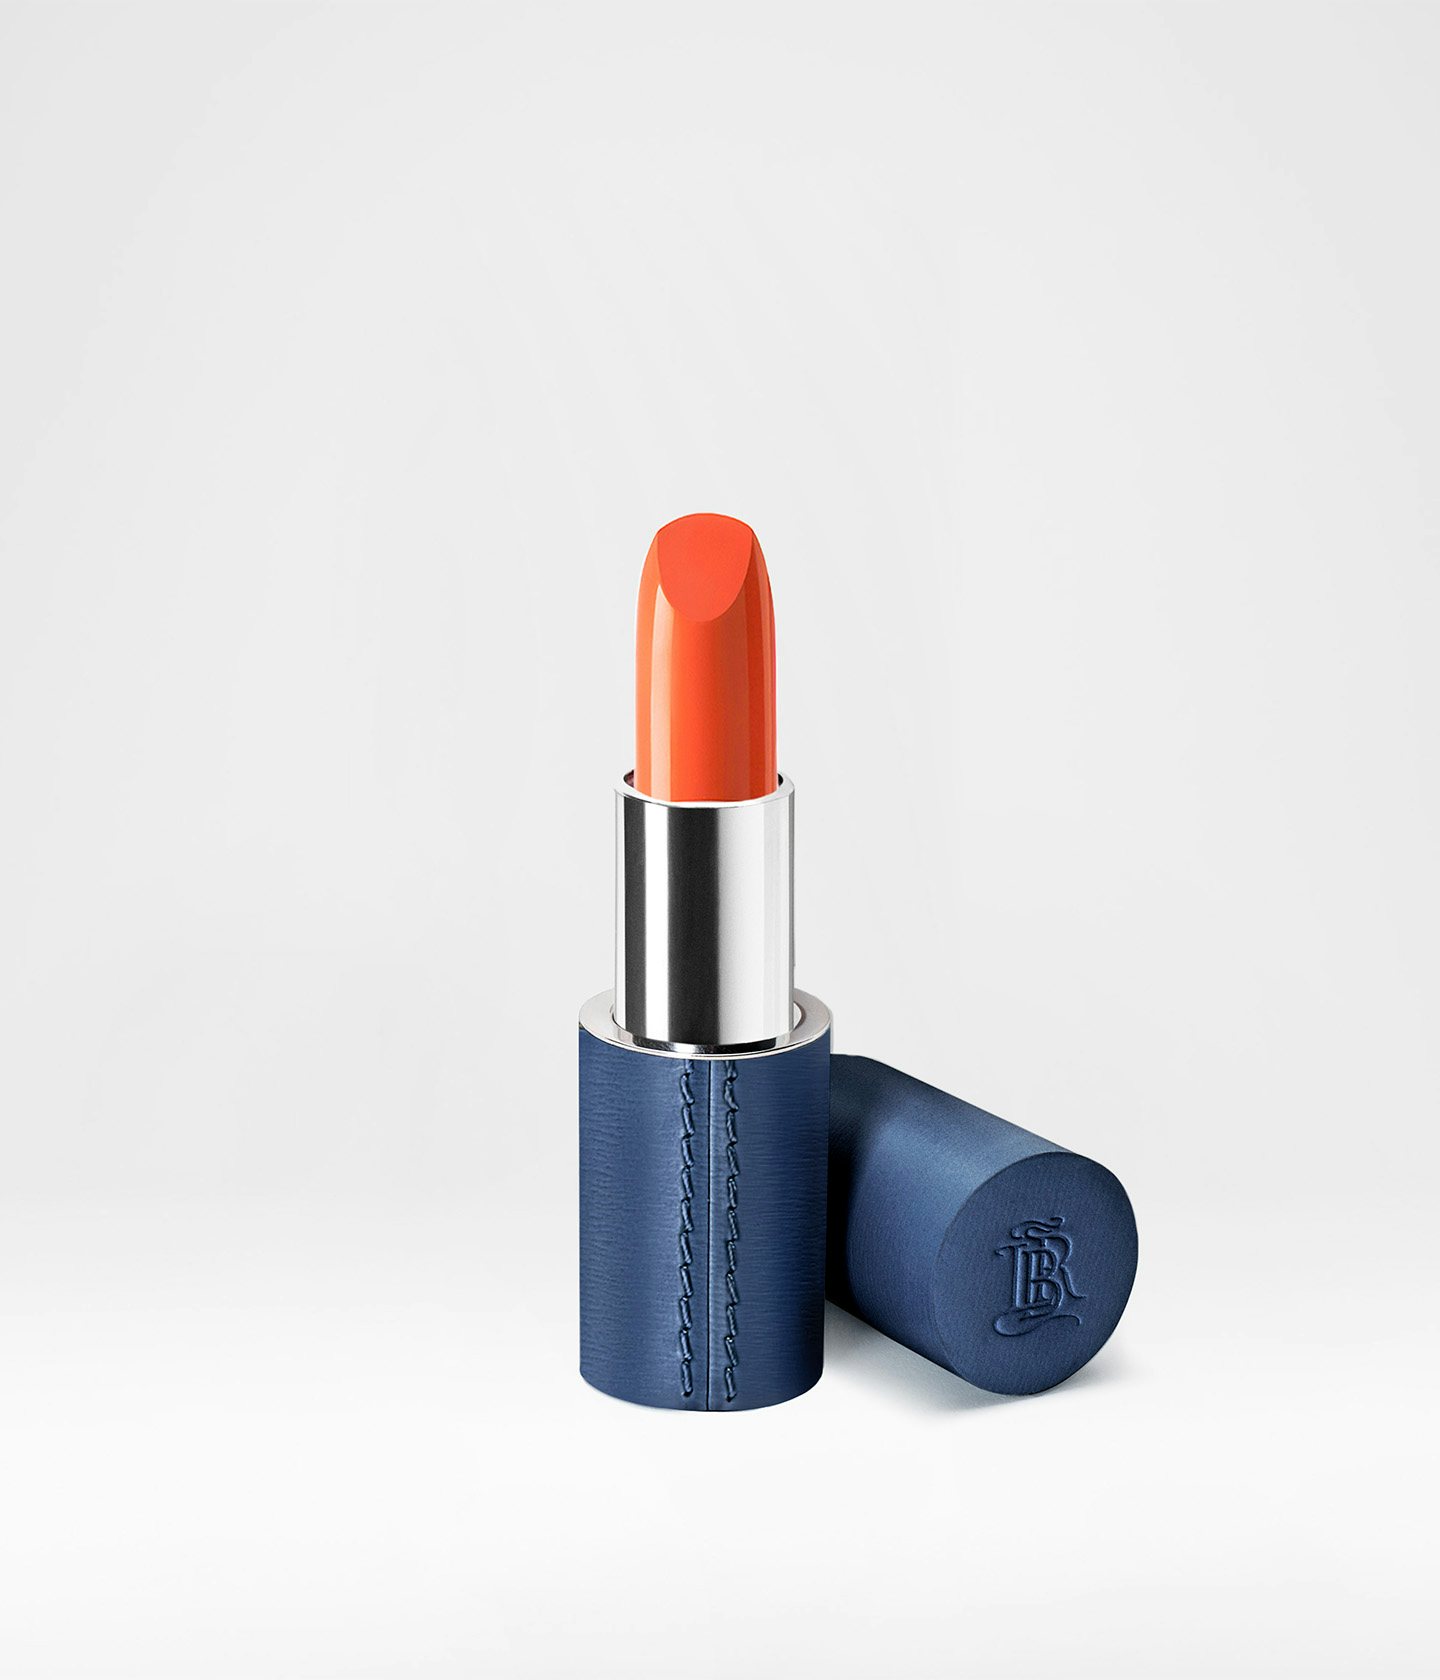 La bouche rouge The Capri Edition Corail Solaire lipstick in navy blue case